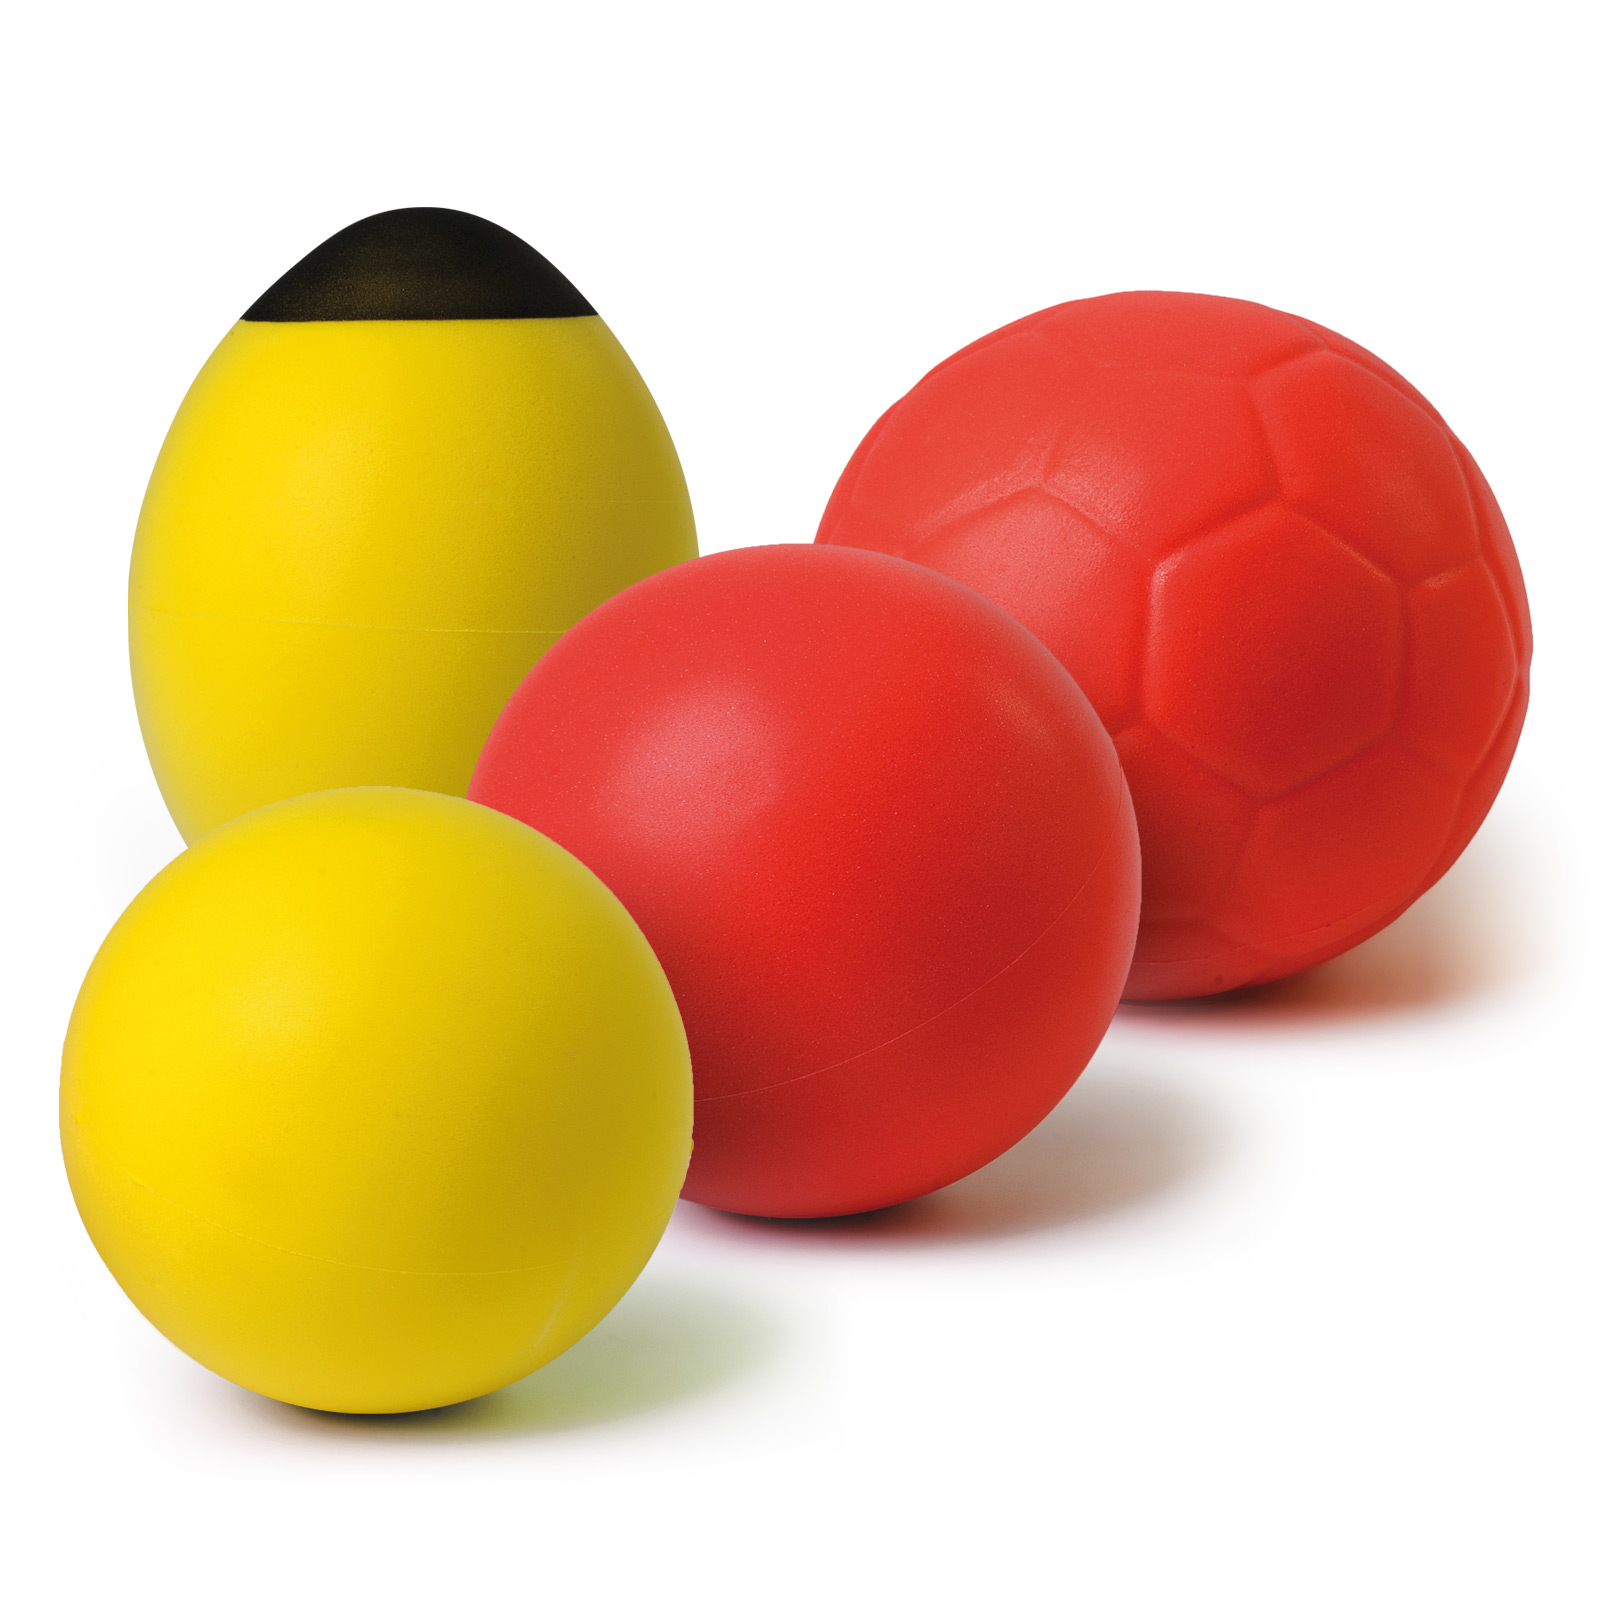 H&M rappelle des ballons de football en mousse - Alertes - Portail